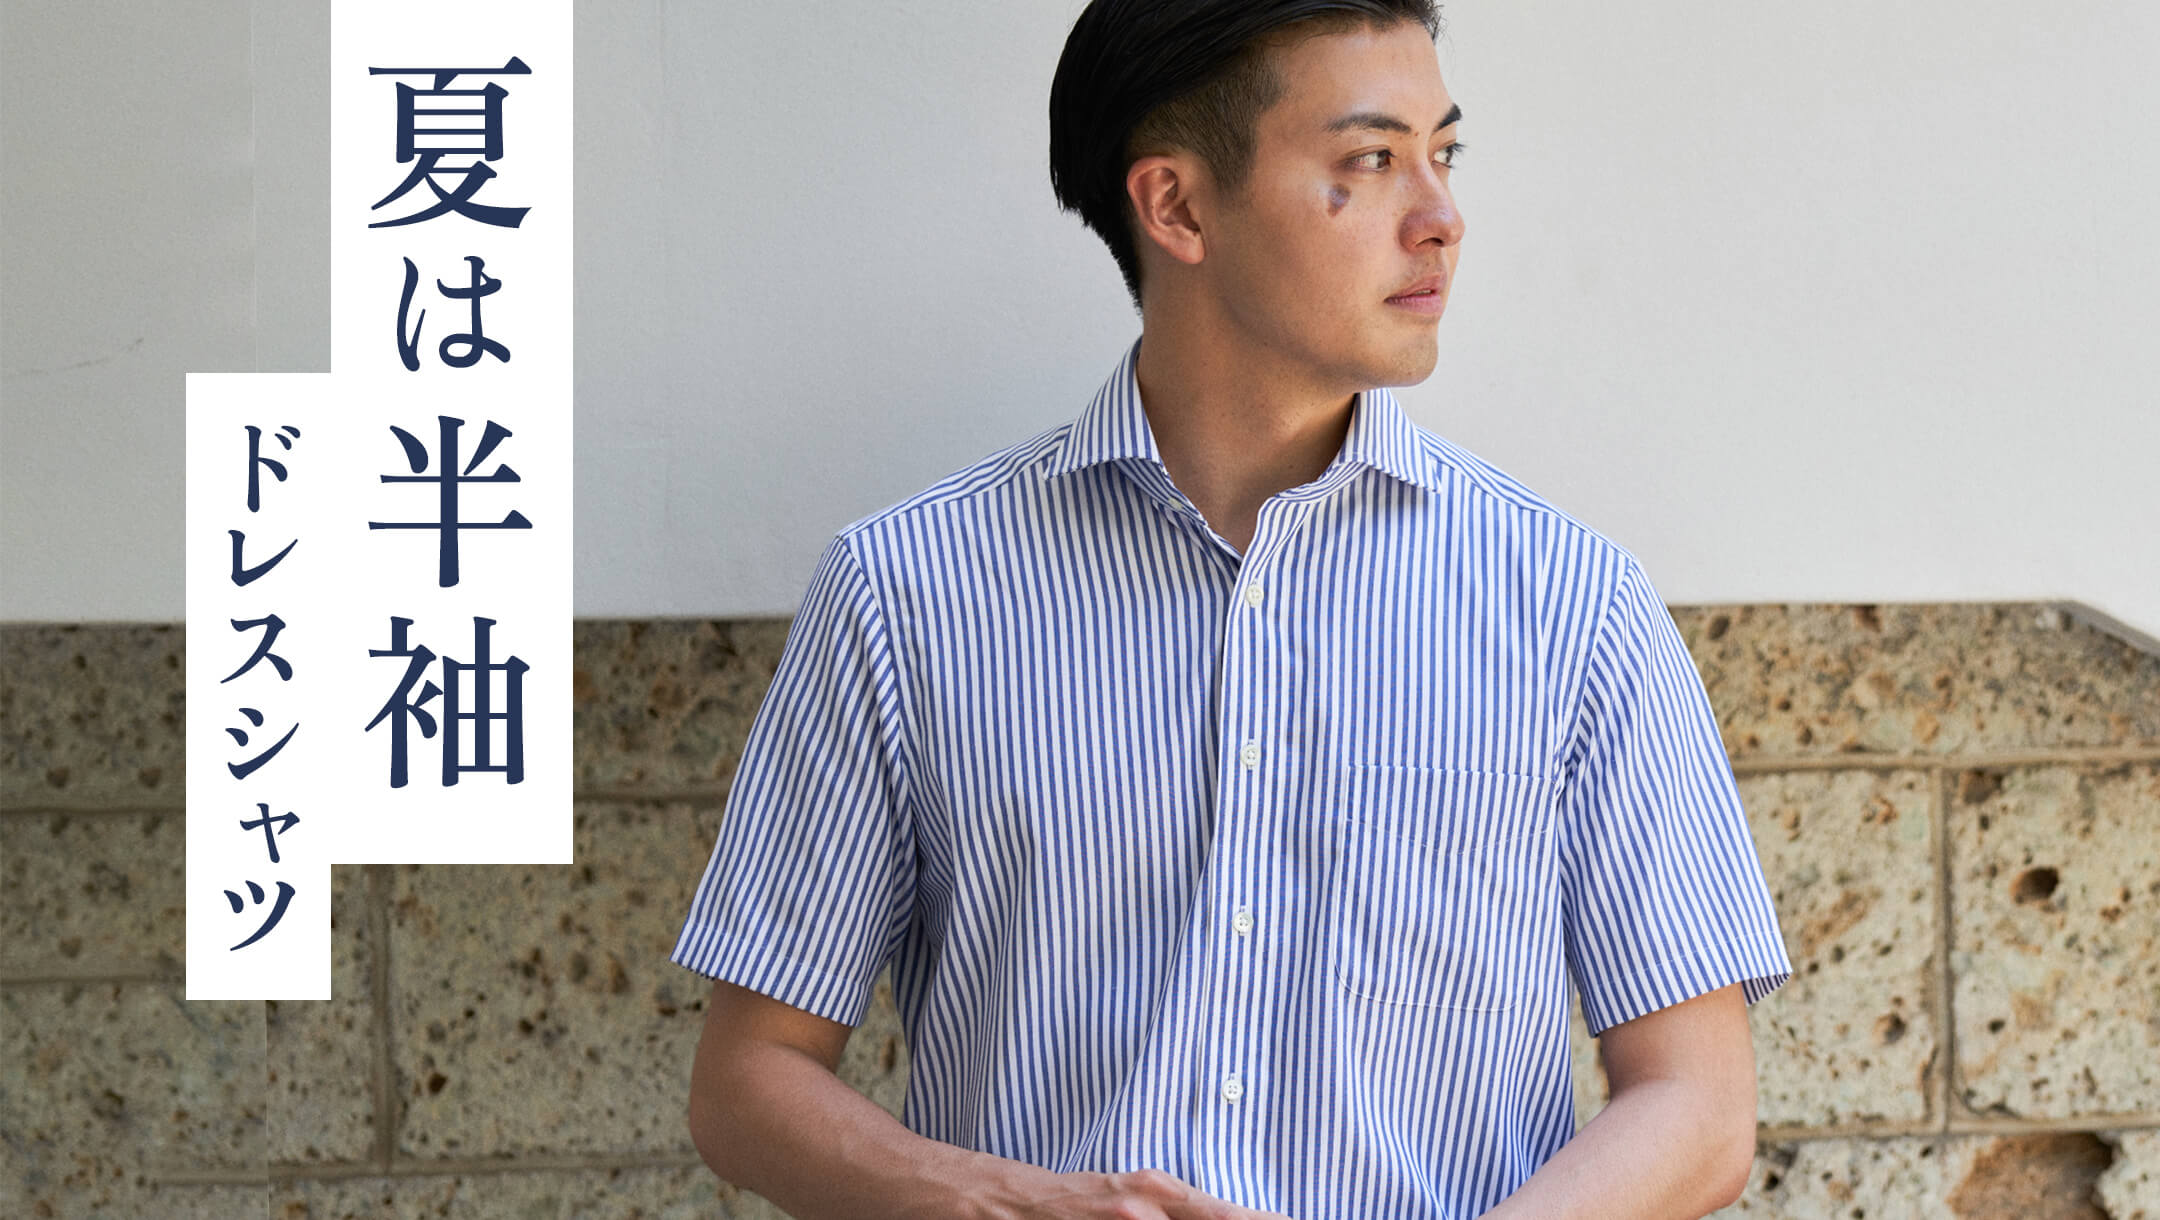 メーカーズシャツ鎌倉 公式通販| 鎌倉シャツオンラインショップ